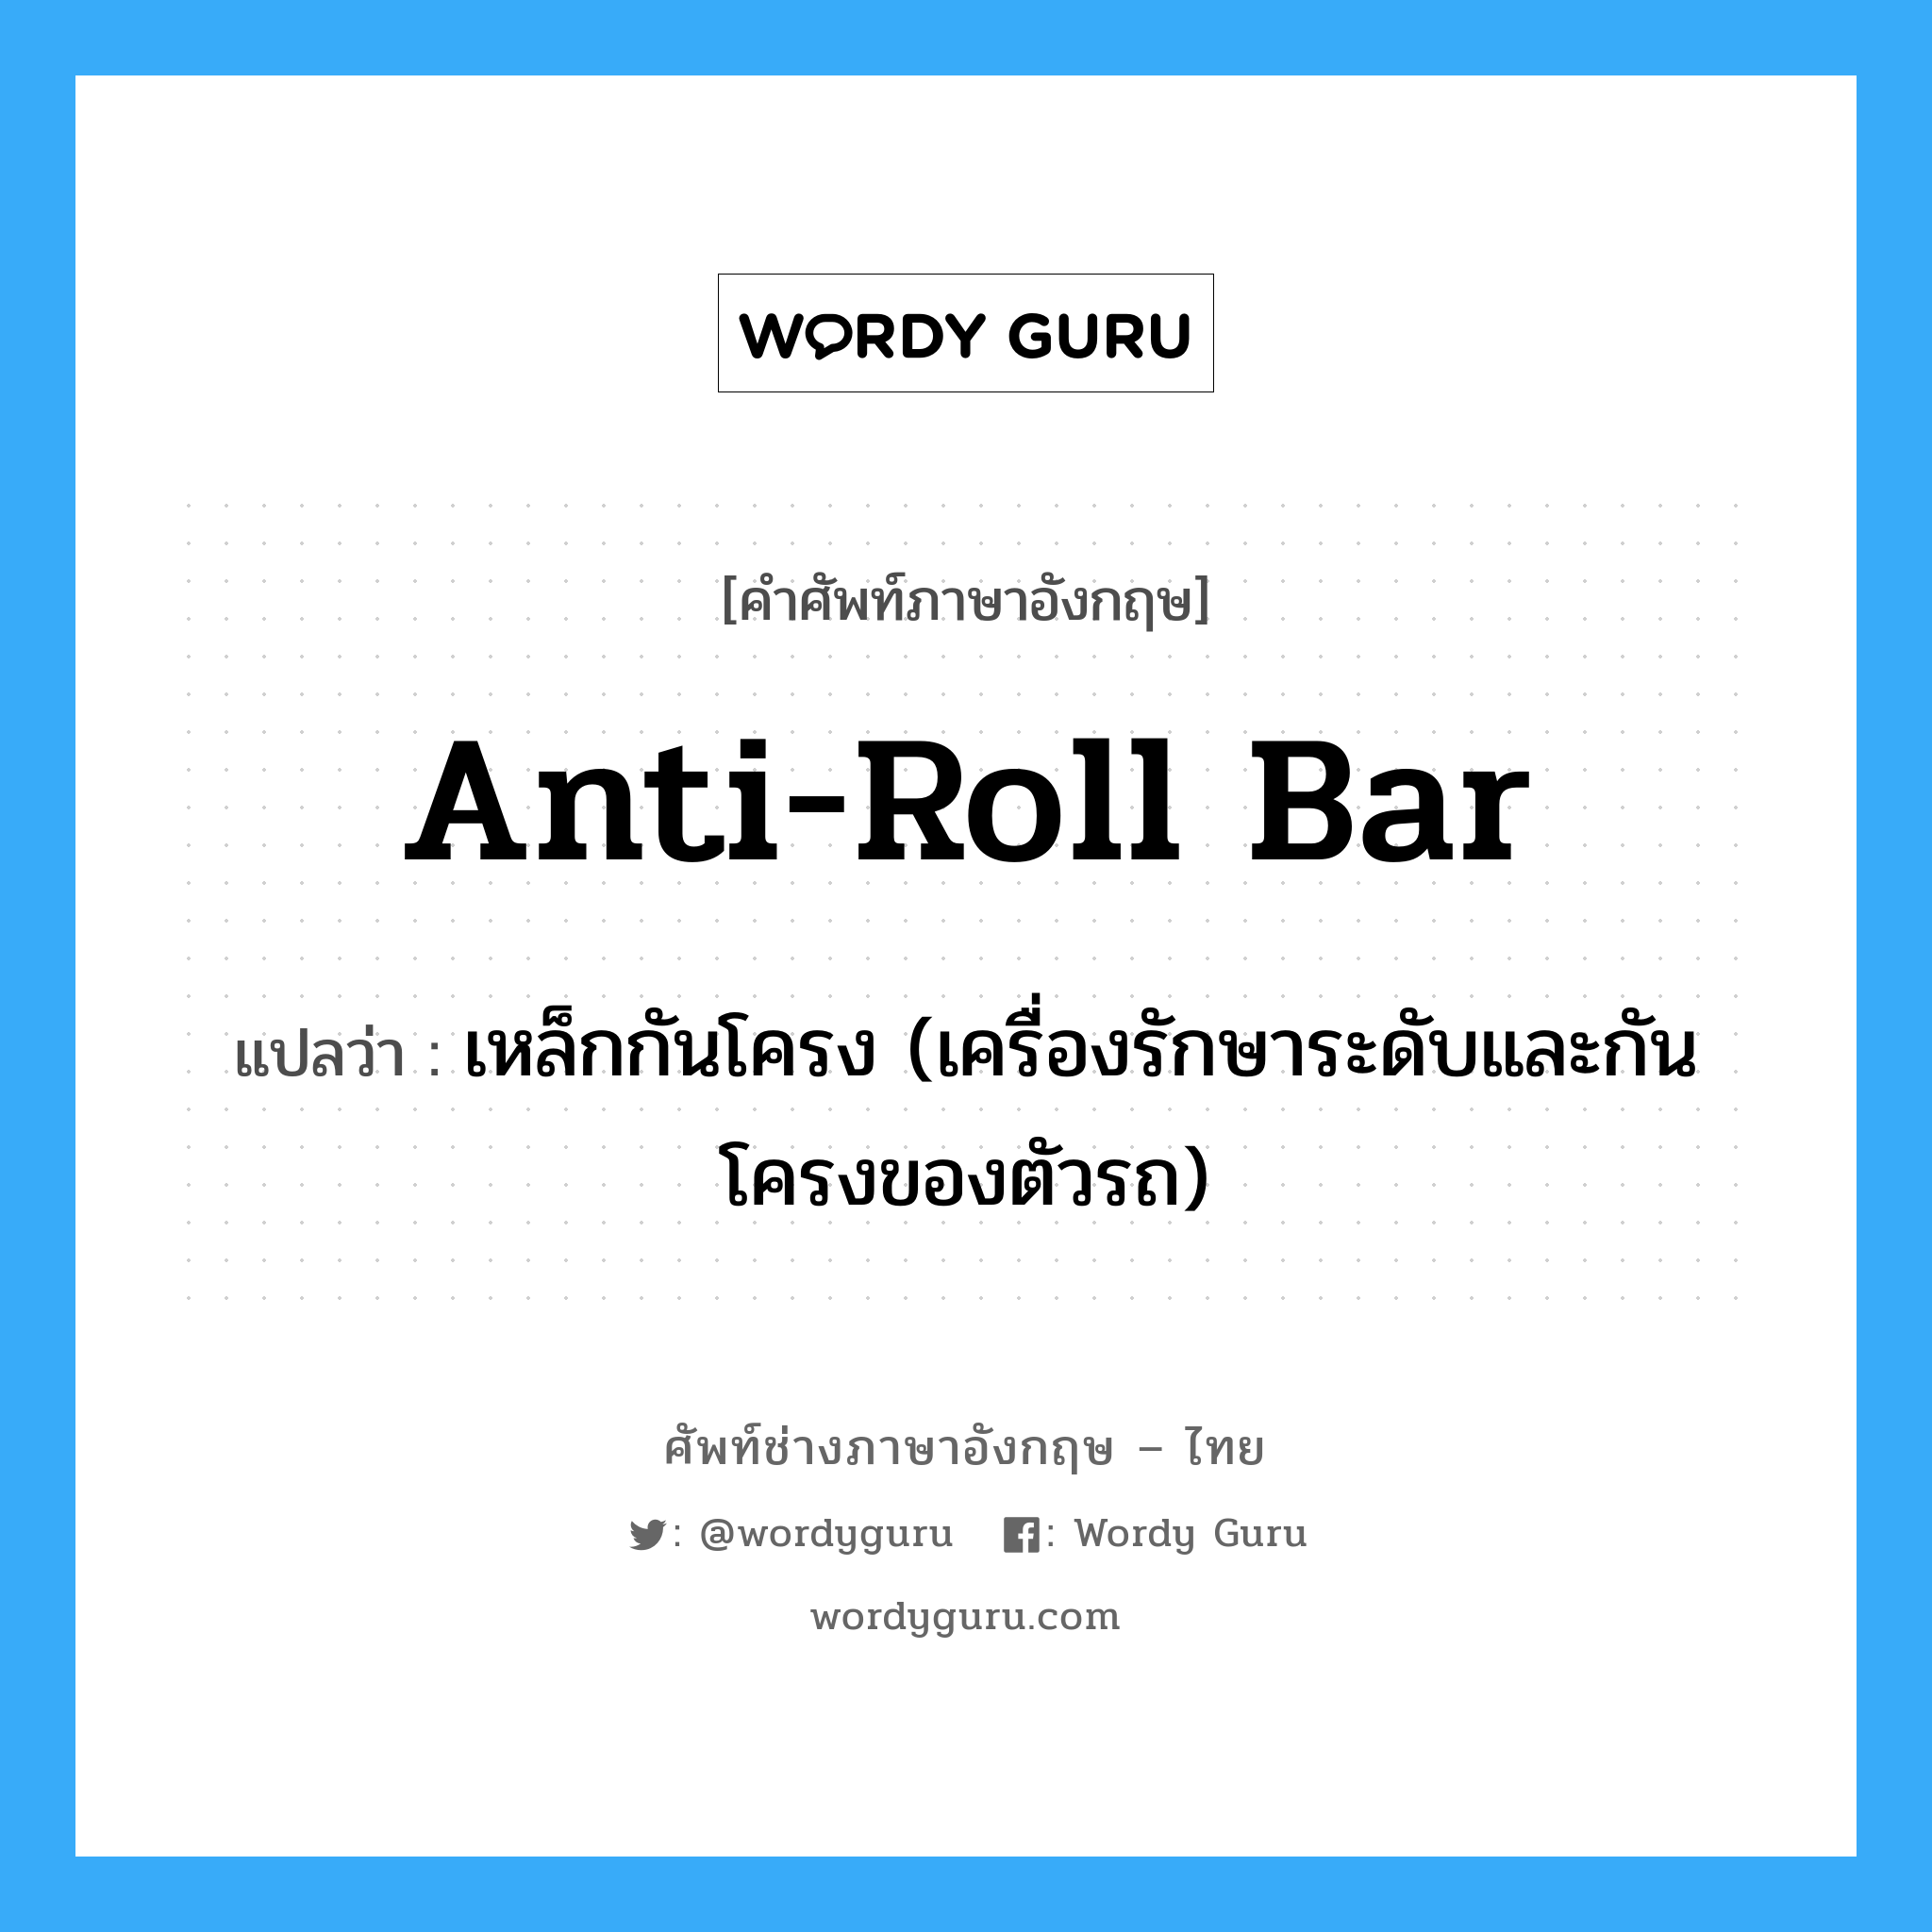 anti-roll bar แปลว่า?, คำศัพท์ช่างภาษาอังกฤษ - ไทย anti-roll bar คำศัพท์ภาษาอังกฤษ anti-roll bar แปลว่า เหล็กกันโครง (เครื่องรักษาระดับและกันโครงของตัวรถ)